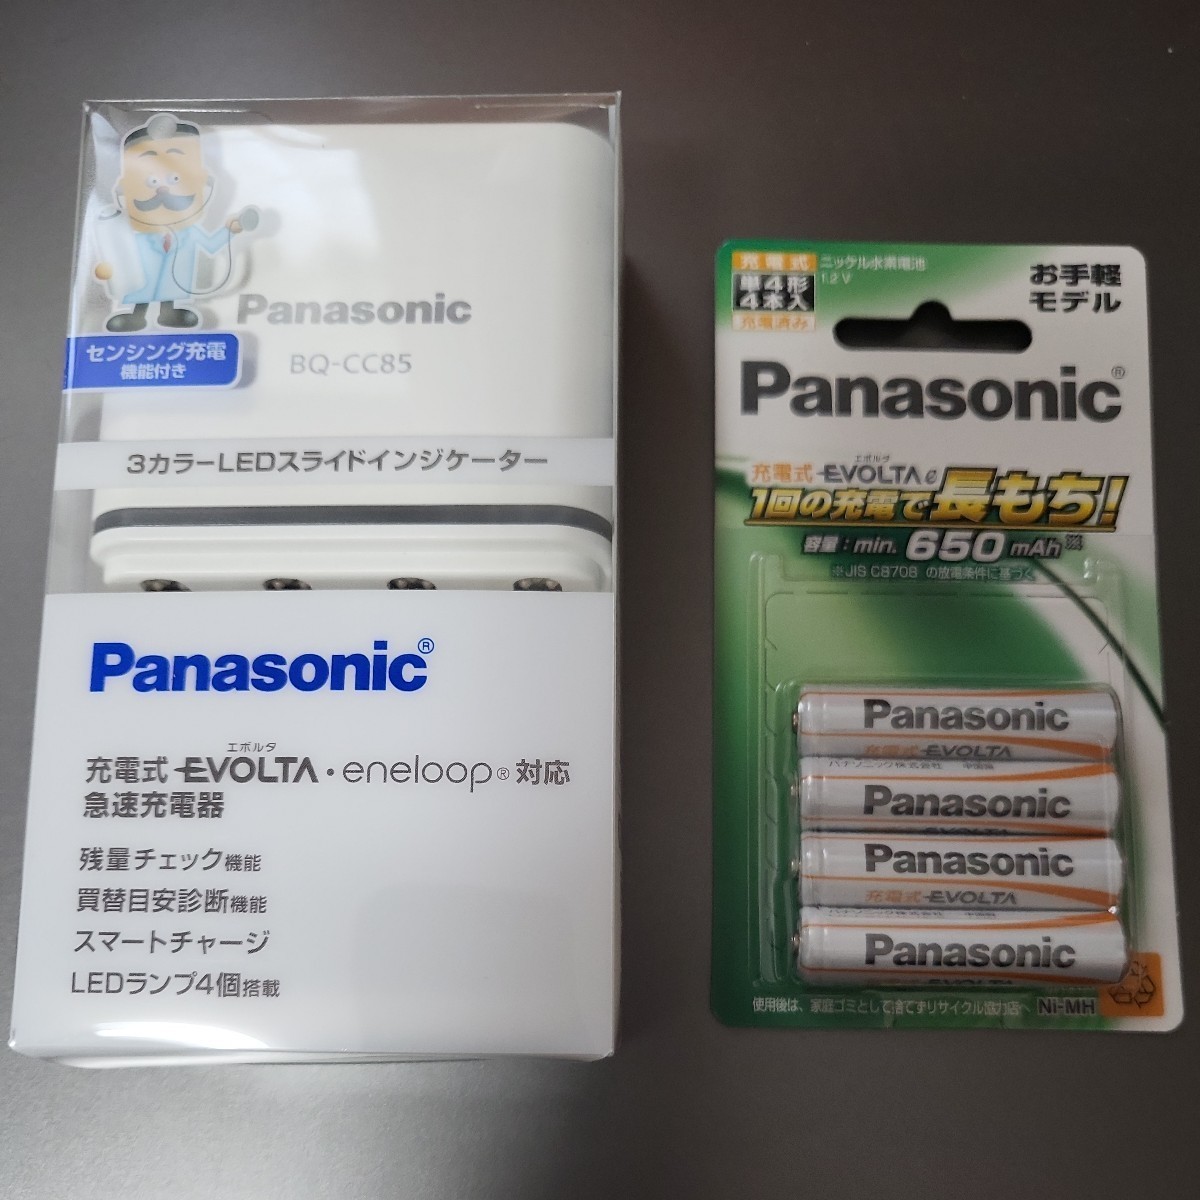 6.パナソニック充電器 BQ-CC85 と 単4形充電池 BK-4LLB/4Bのセット Panasonic 急速充電器 EVOLTA_画像1